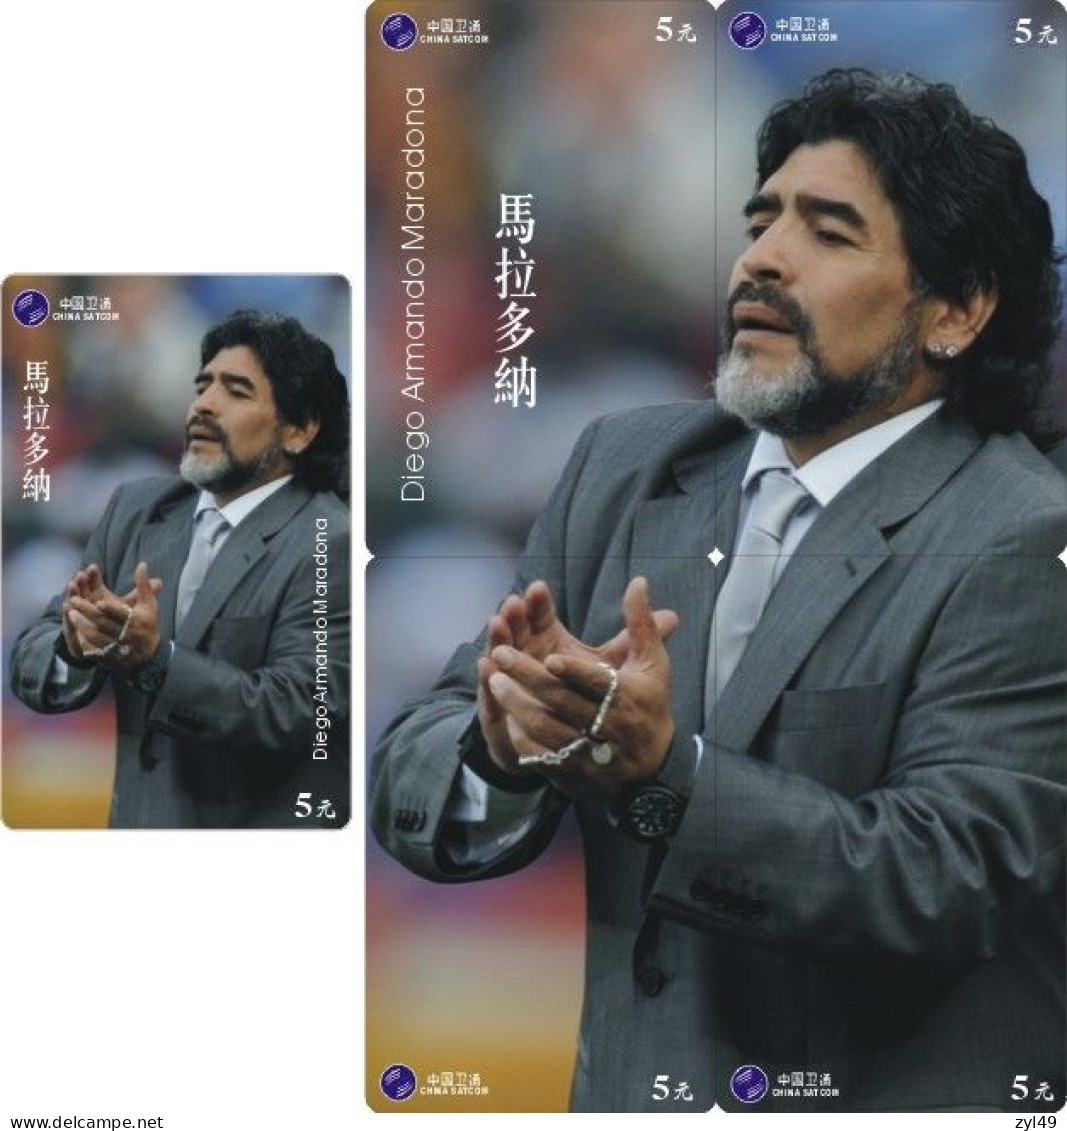 F13007 China phone cards football Maradona 150pcs